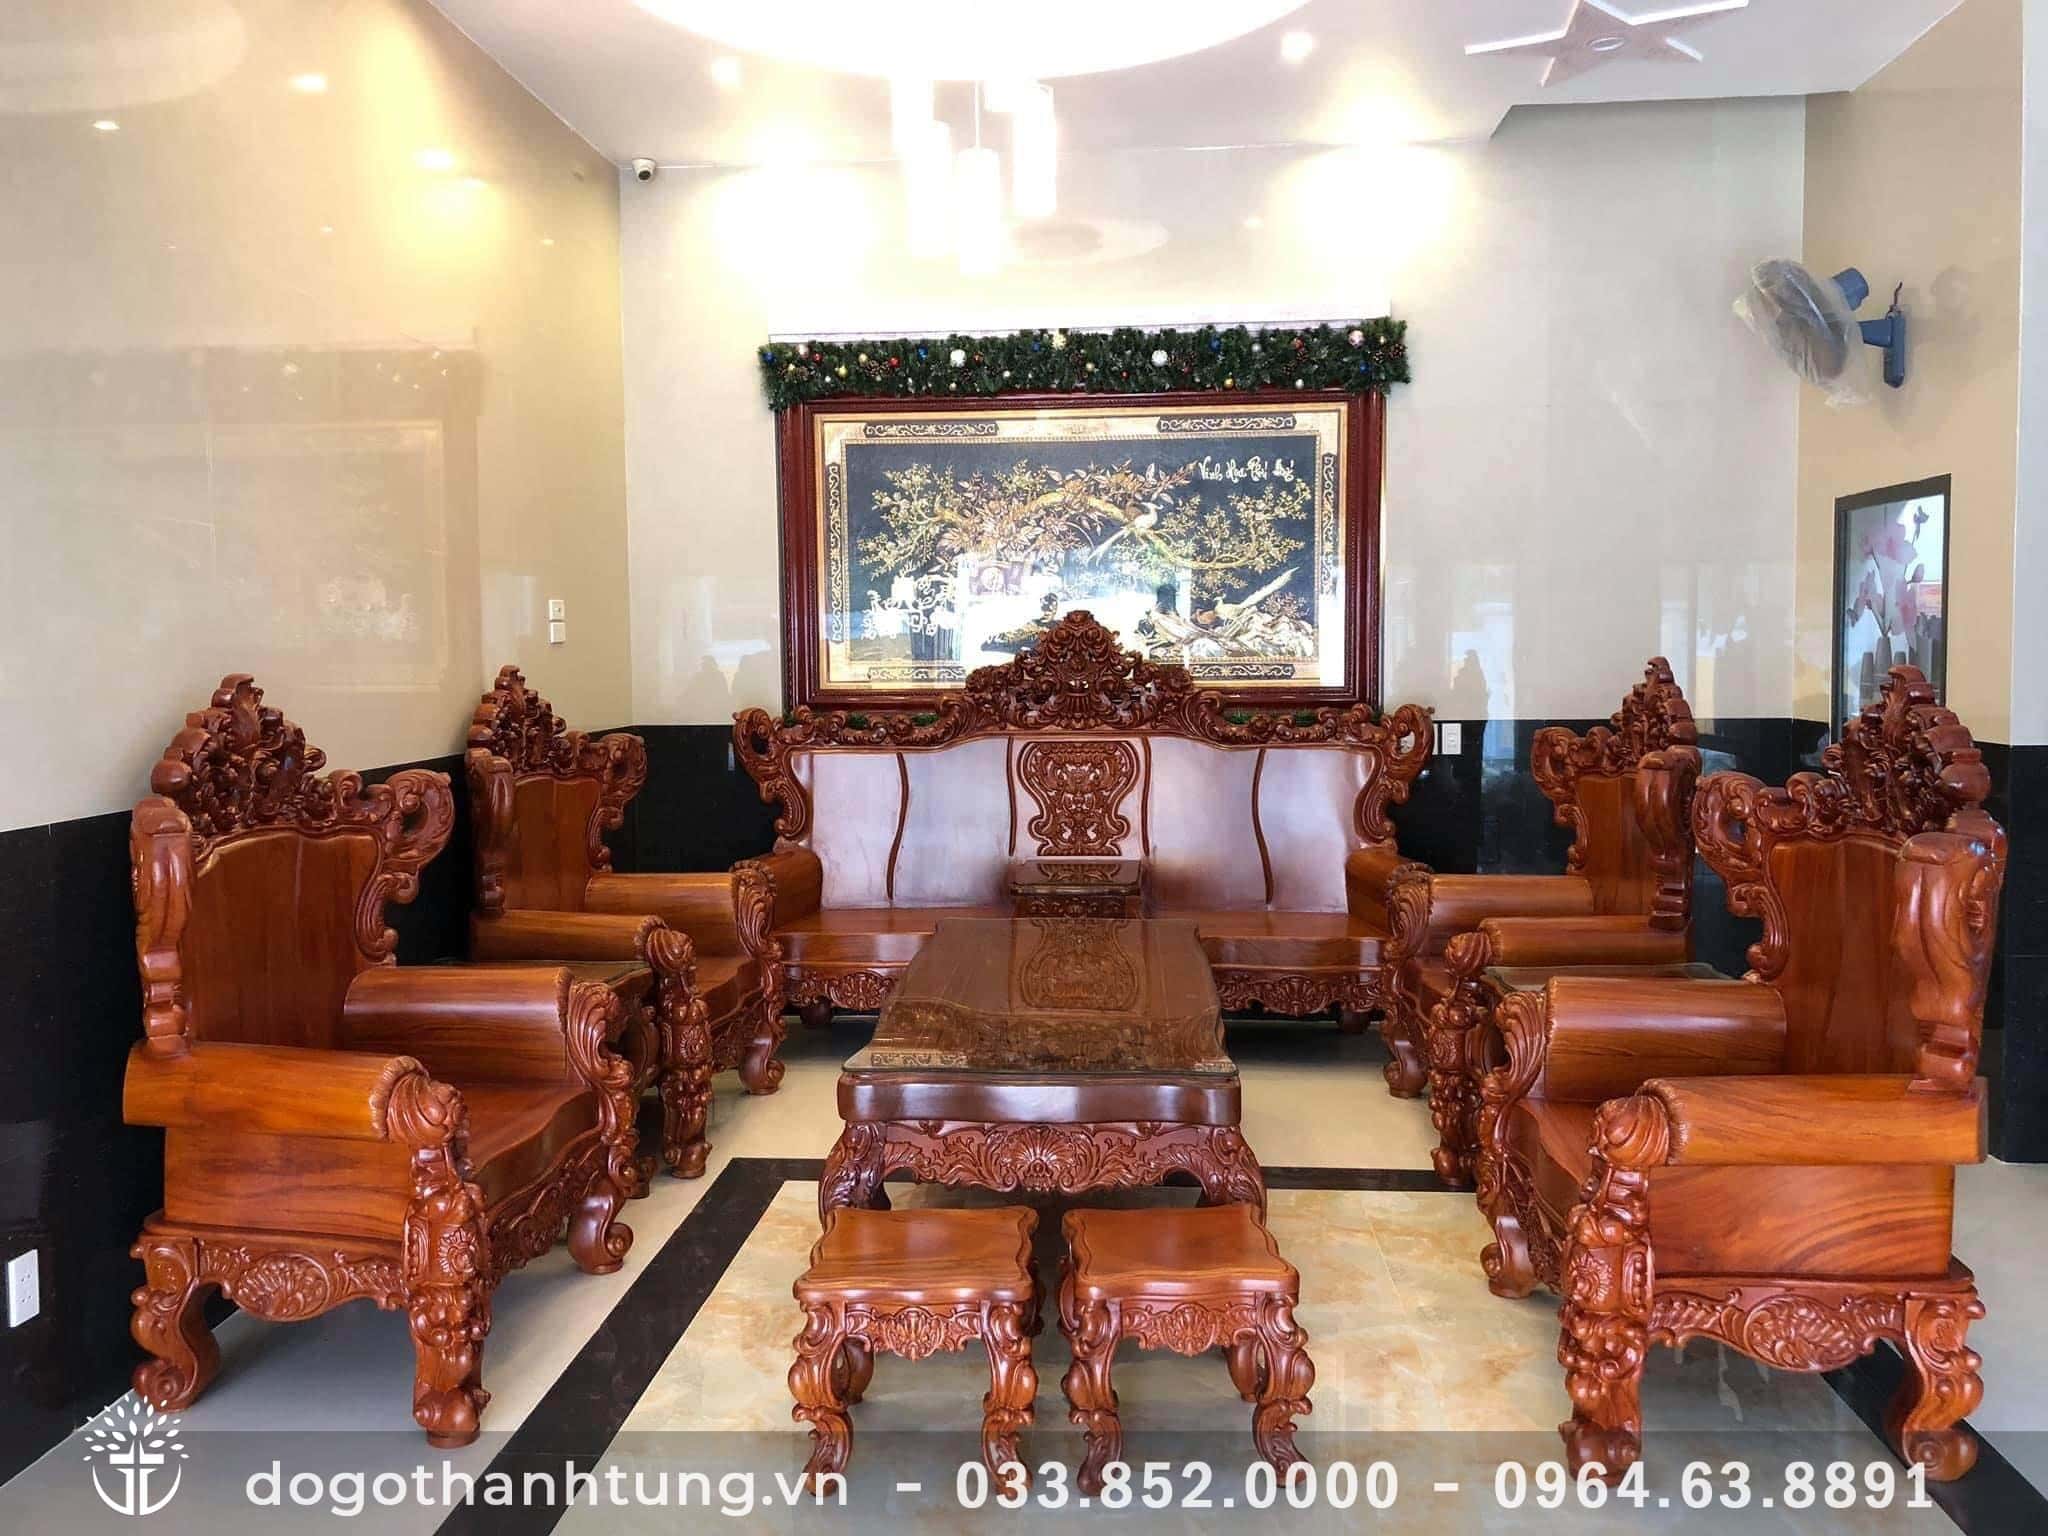 Với Bộ bàn ghế phòng khách gỗ gõ đỏ, không gian sống của bạn sẽ trở nên ấn tượng và nổi bật hơn. Thiết kế tinh tế, đường nét trơn tru và chất liệu gỗ cao cấp sẽ giúp tạo nên một không gian phòng khách tuyệt vời và đẳng cấp.